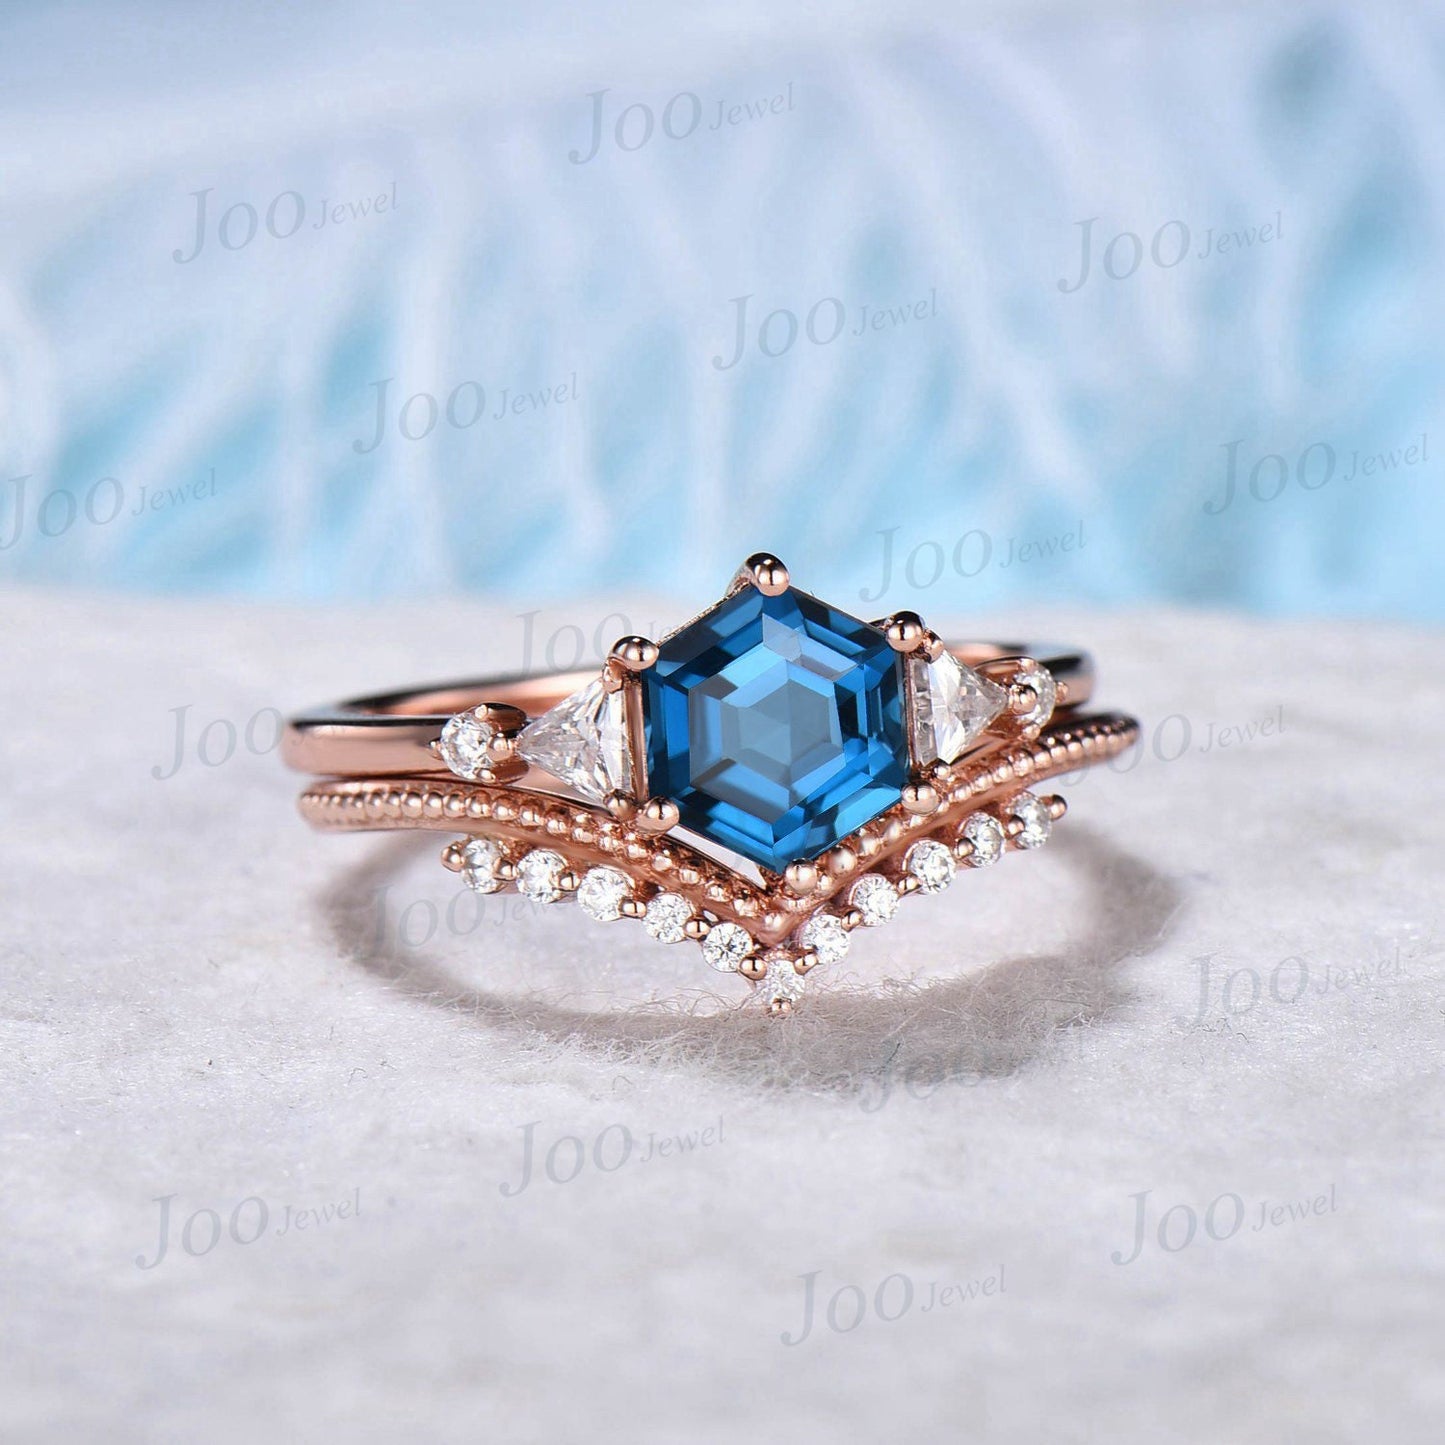 Hexagon Cut London Blue Topaz Engagement Ring Set 10K Rose Gold 1ct Blue Topaz Wedding Ring Set December Birthstone Moissanite Promise Ring